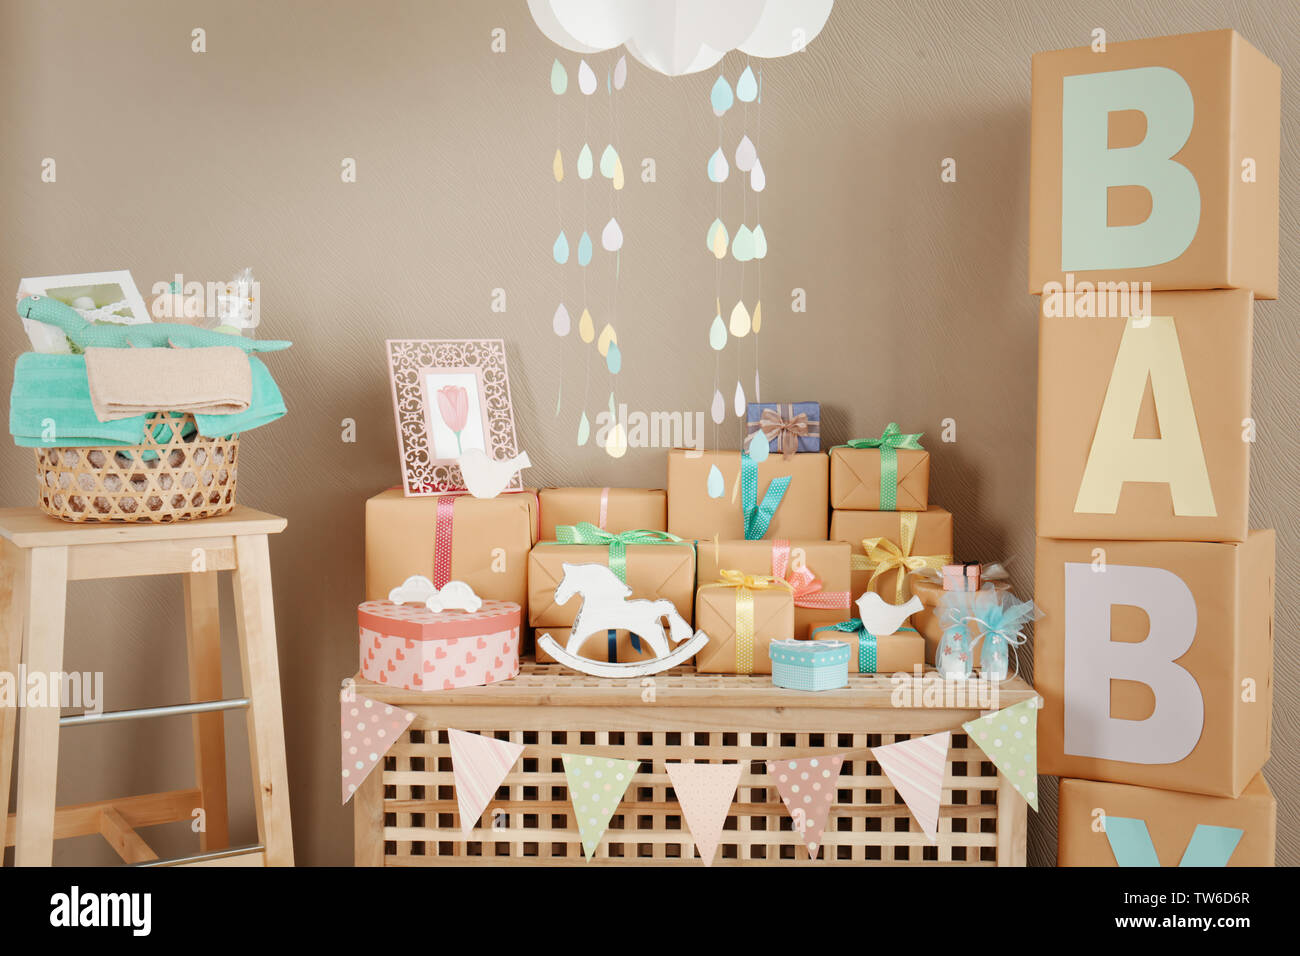 Regalos y decoraciones para baby shower en interiores Fotografía